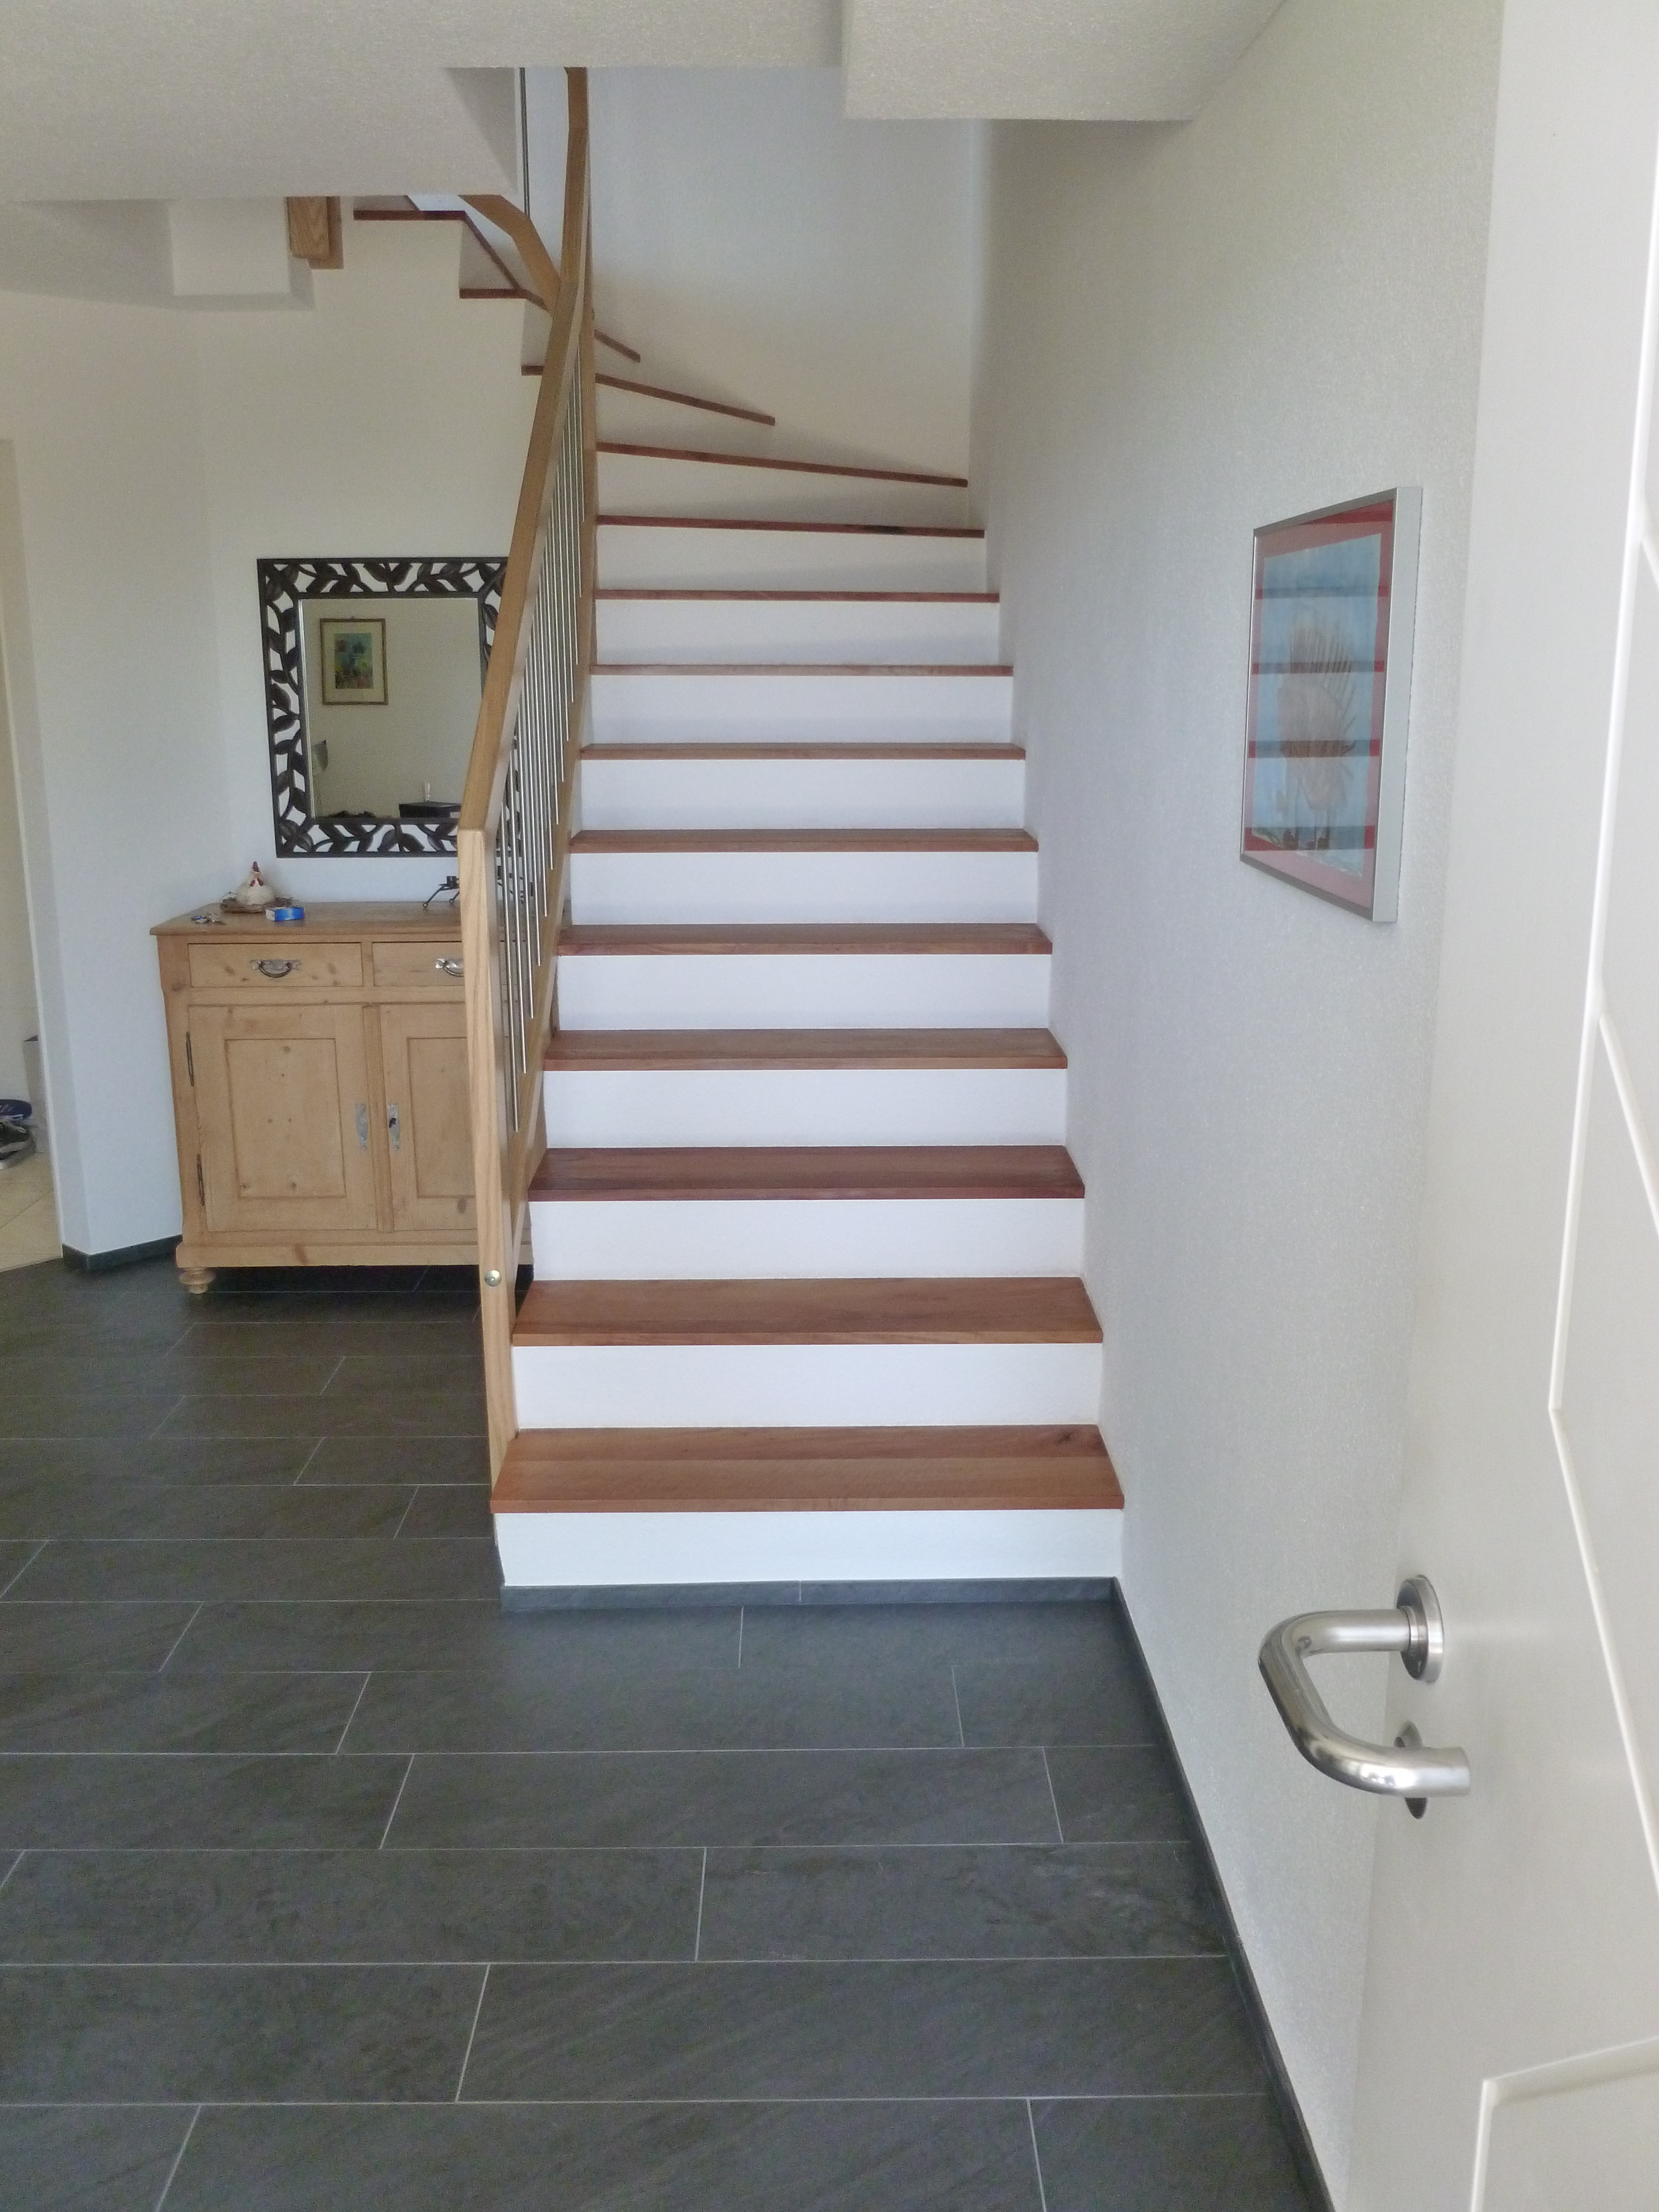 Treppen mit neuen Holztritten und Boden mit Keramikplatten - Gassmann-Innenausbau Bäretswil